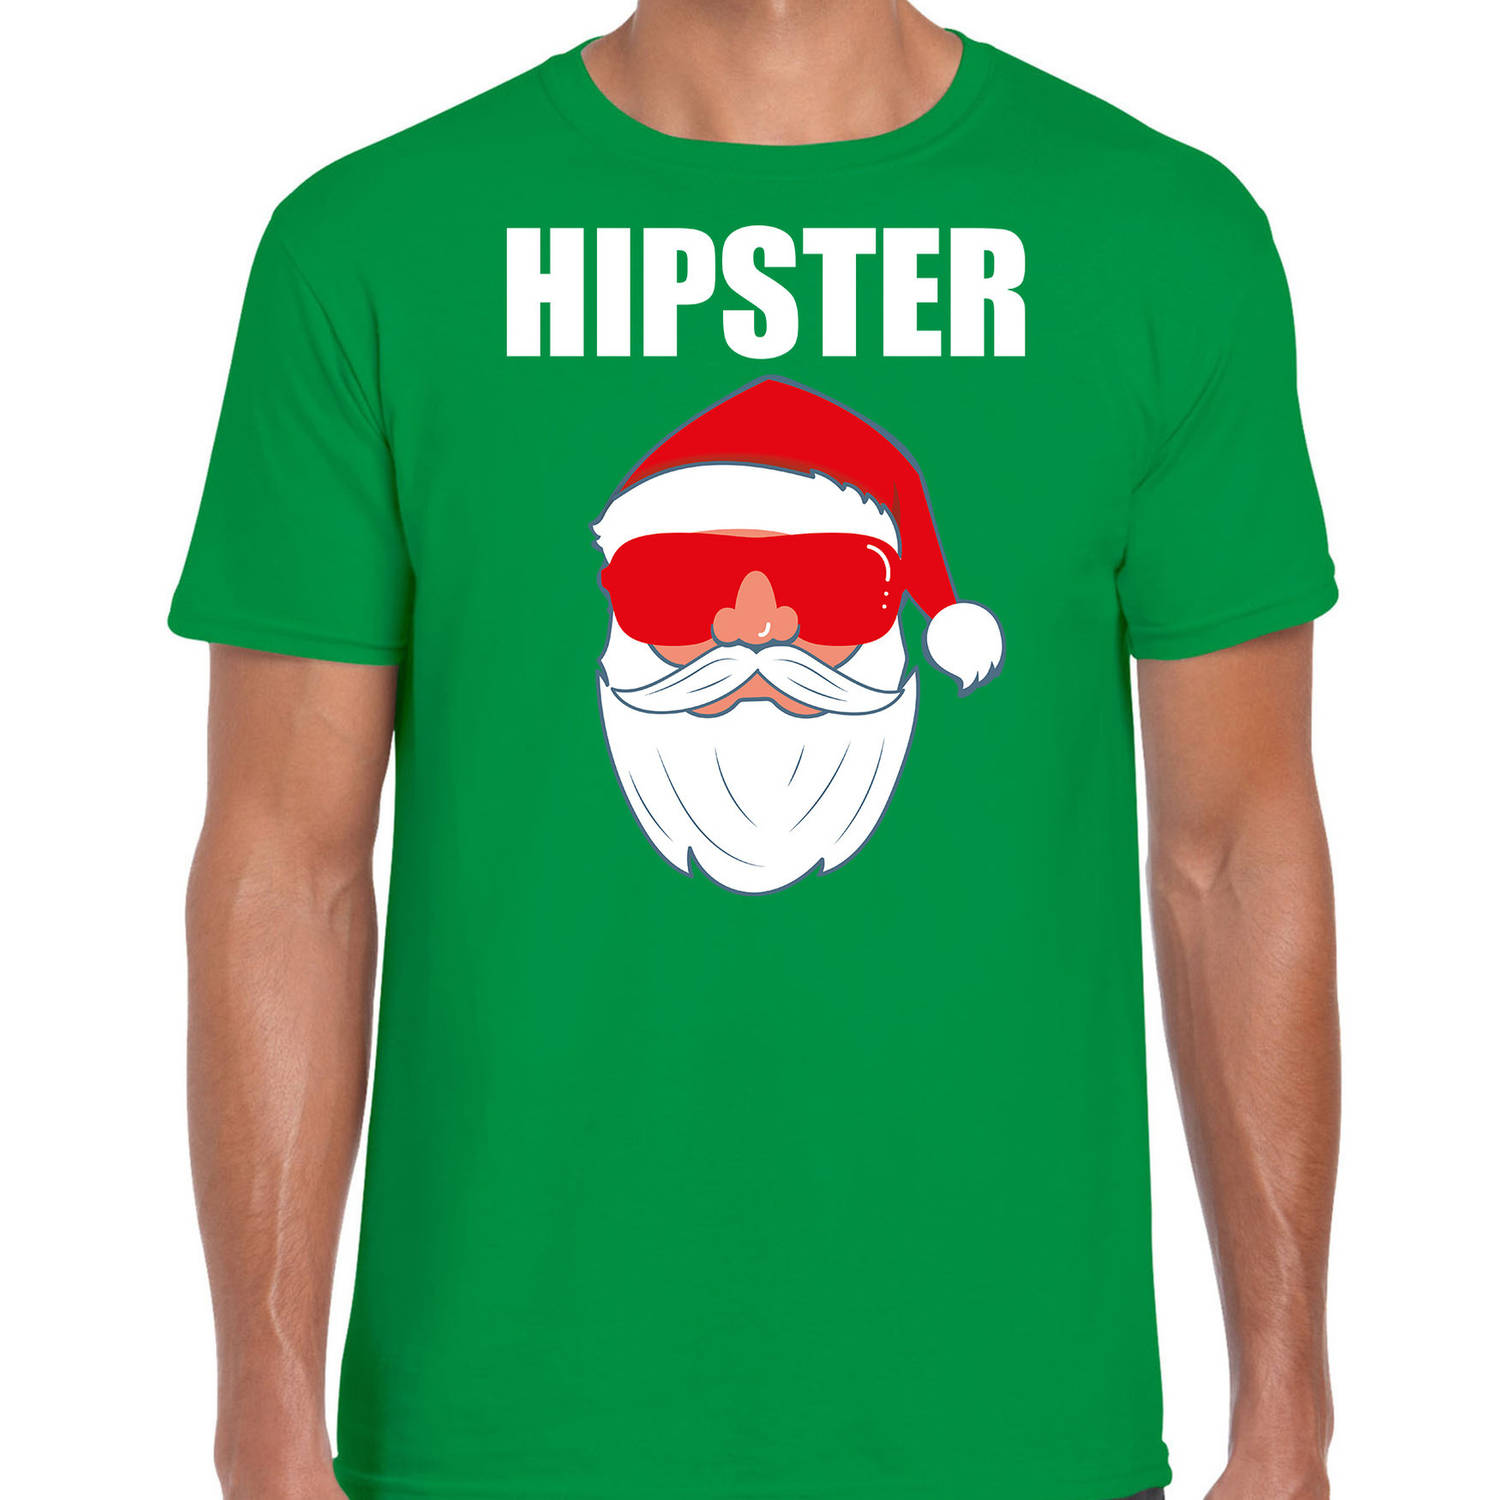 Groen Kersttrui / Kerstkleding Hipster voor heren met Kerstman met zonnebril M - kerst t-shirts